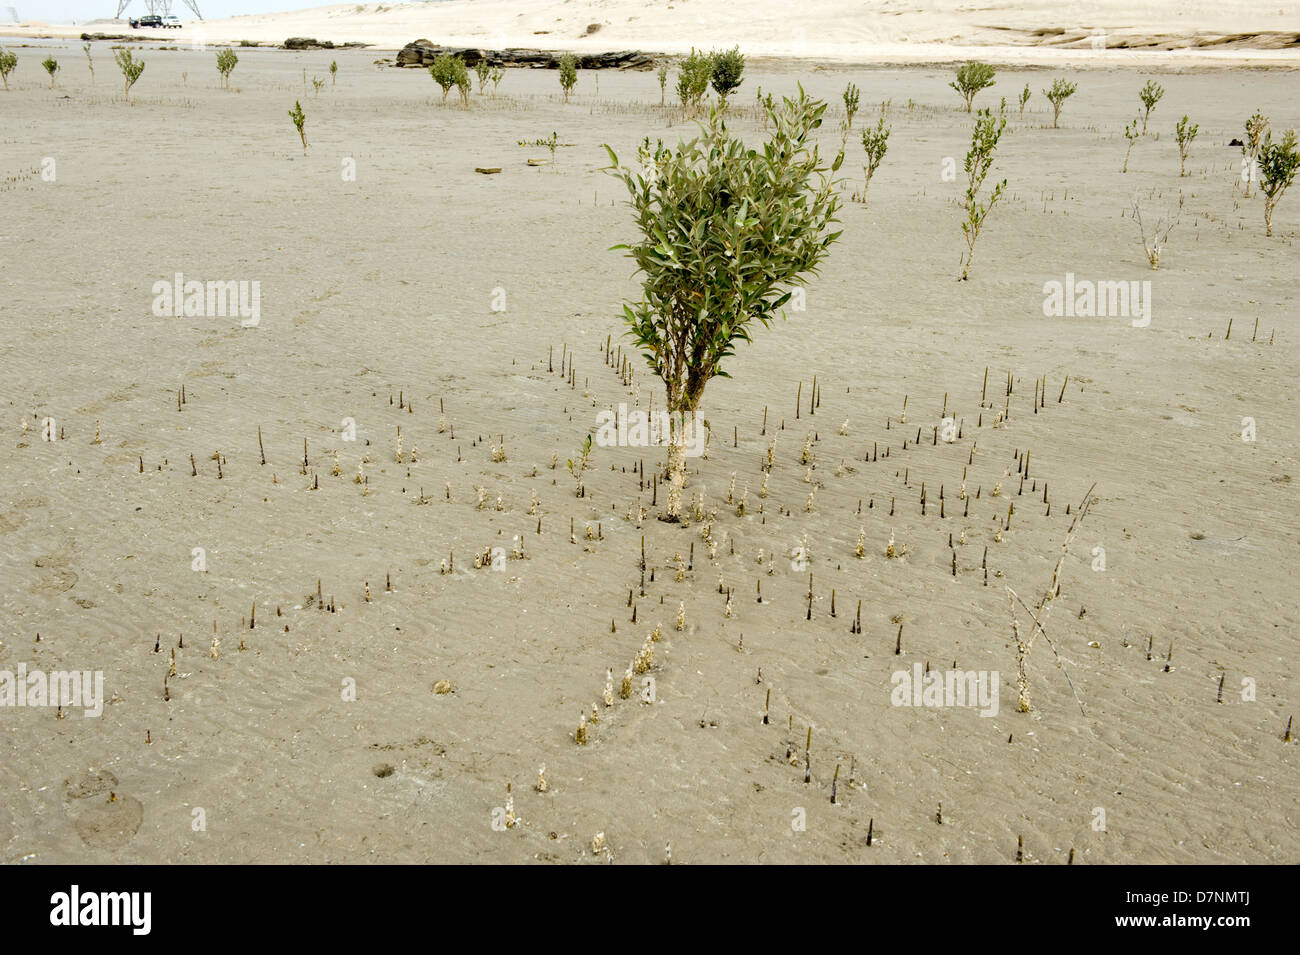 Eine junge graue Mangrove, Avicennia Marina Baum bei Ebbe mit Luftwurzeln oder Stelzwurzeln ragte über dem sand Stockfoto